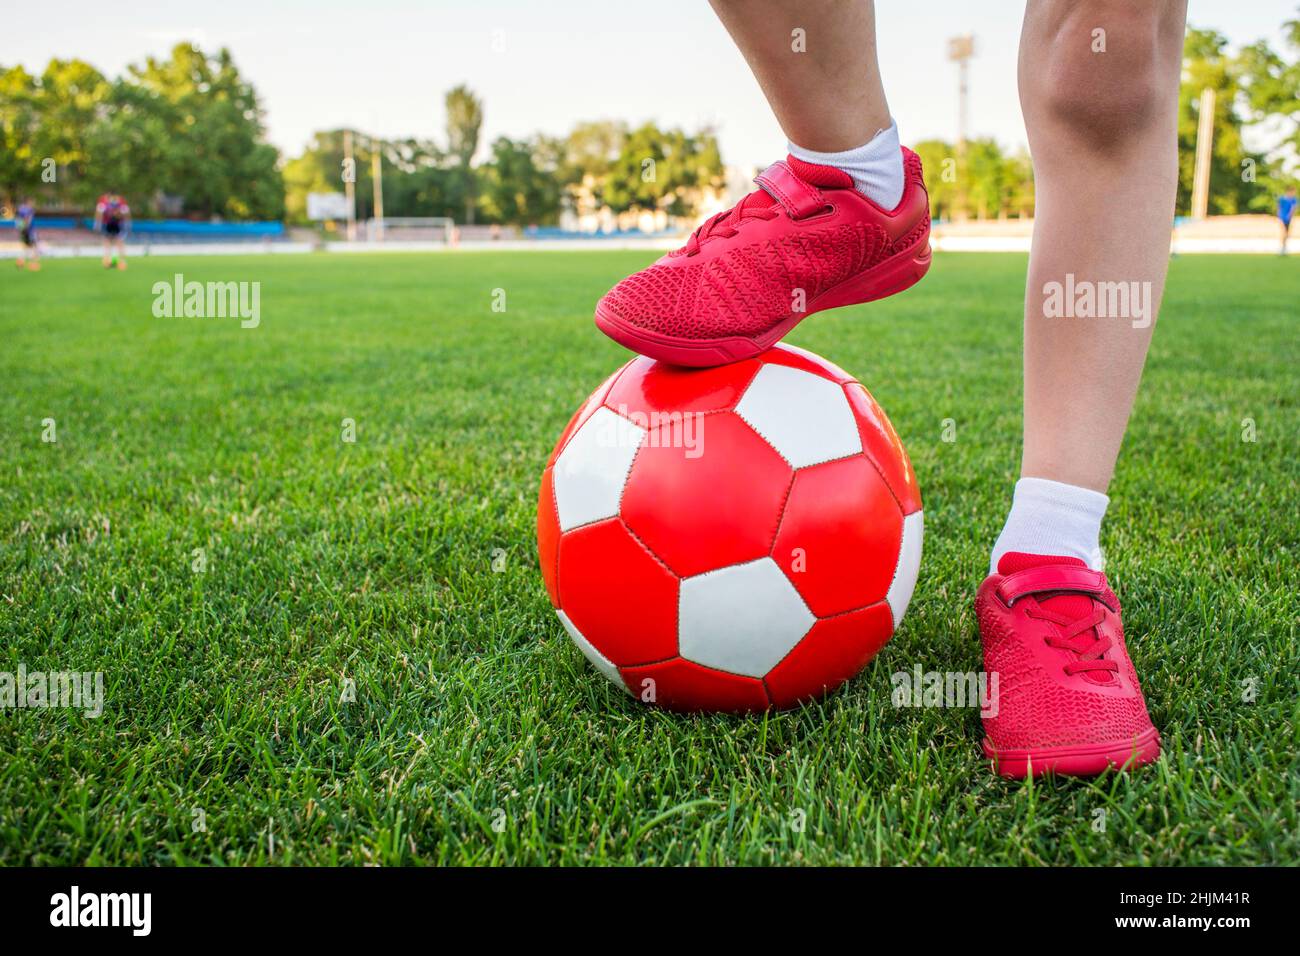 Ein Junge steht auf dem Fußballfeld des Stadions und hält seinen Fuß auf einem Fußball. Kinder spielen Fußball auf dem Rasen. Schulung oder Wettbewerb Co Stockfoto